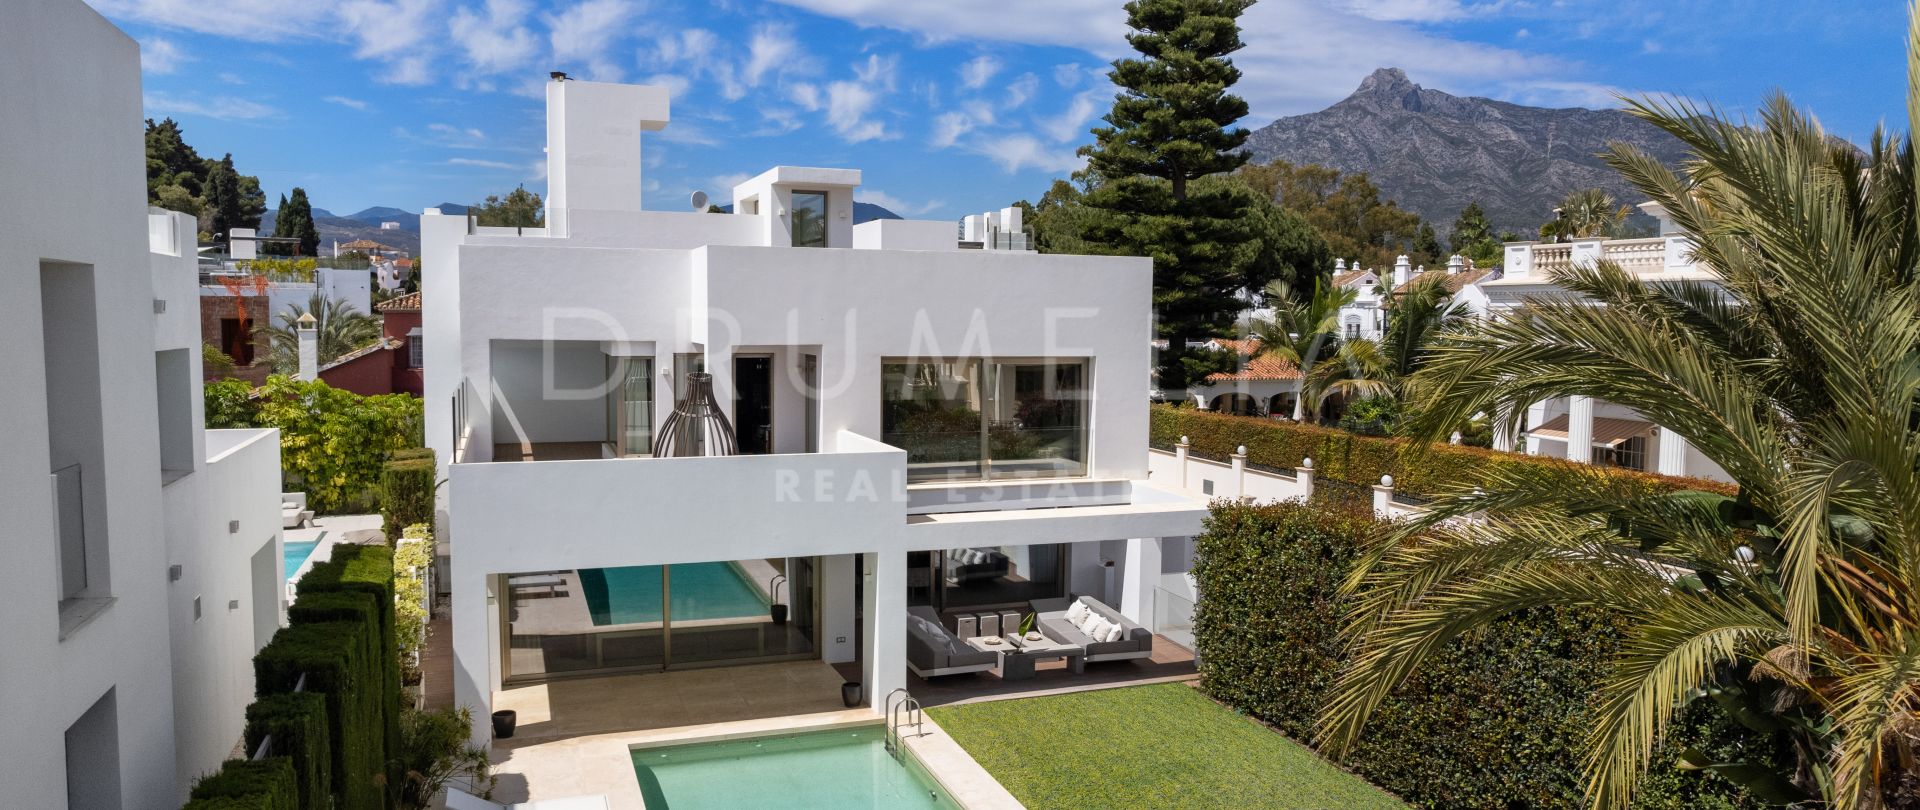 Luxus-Villa in der exklusiven Rio Verde Playa, modernes Design mit modernster Technologie, Marbella.